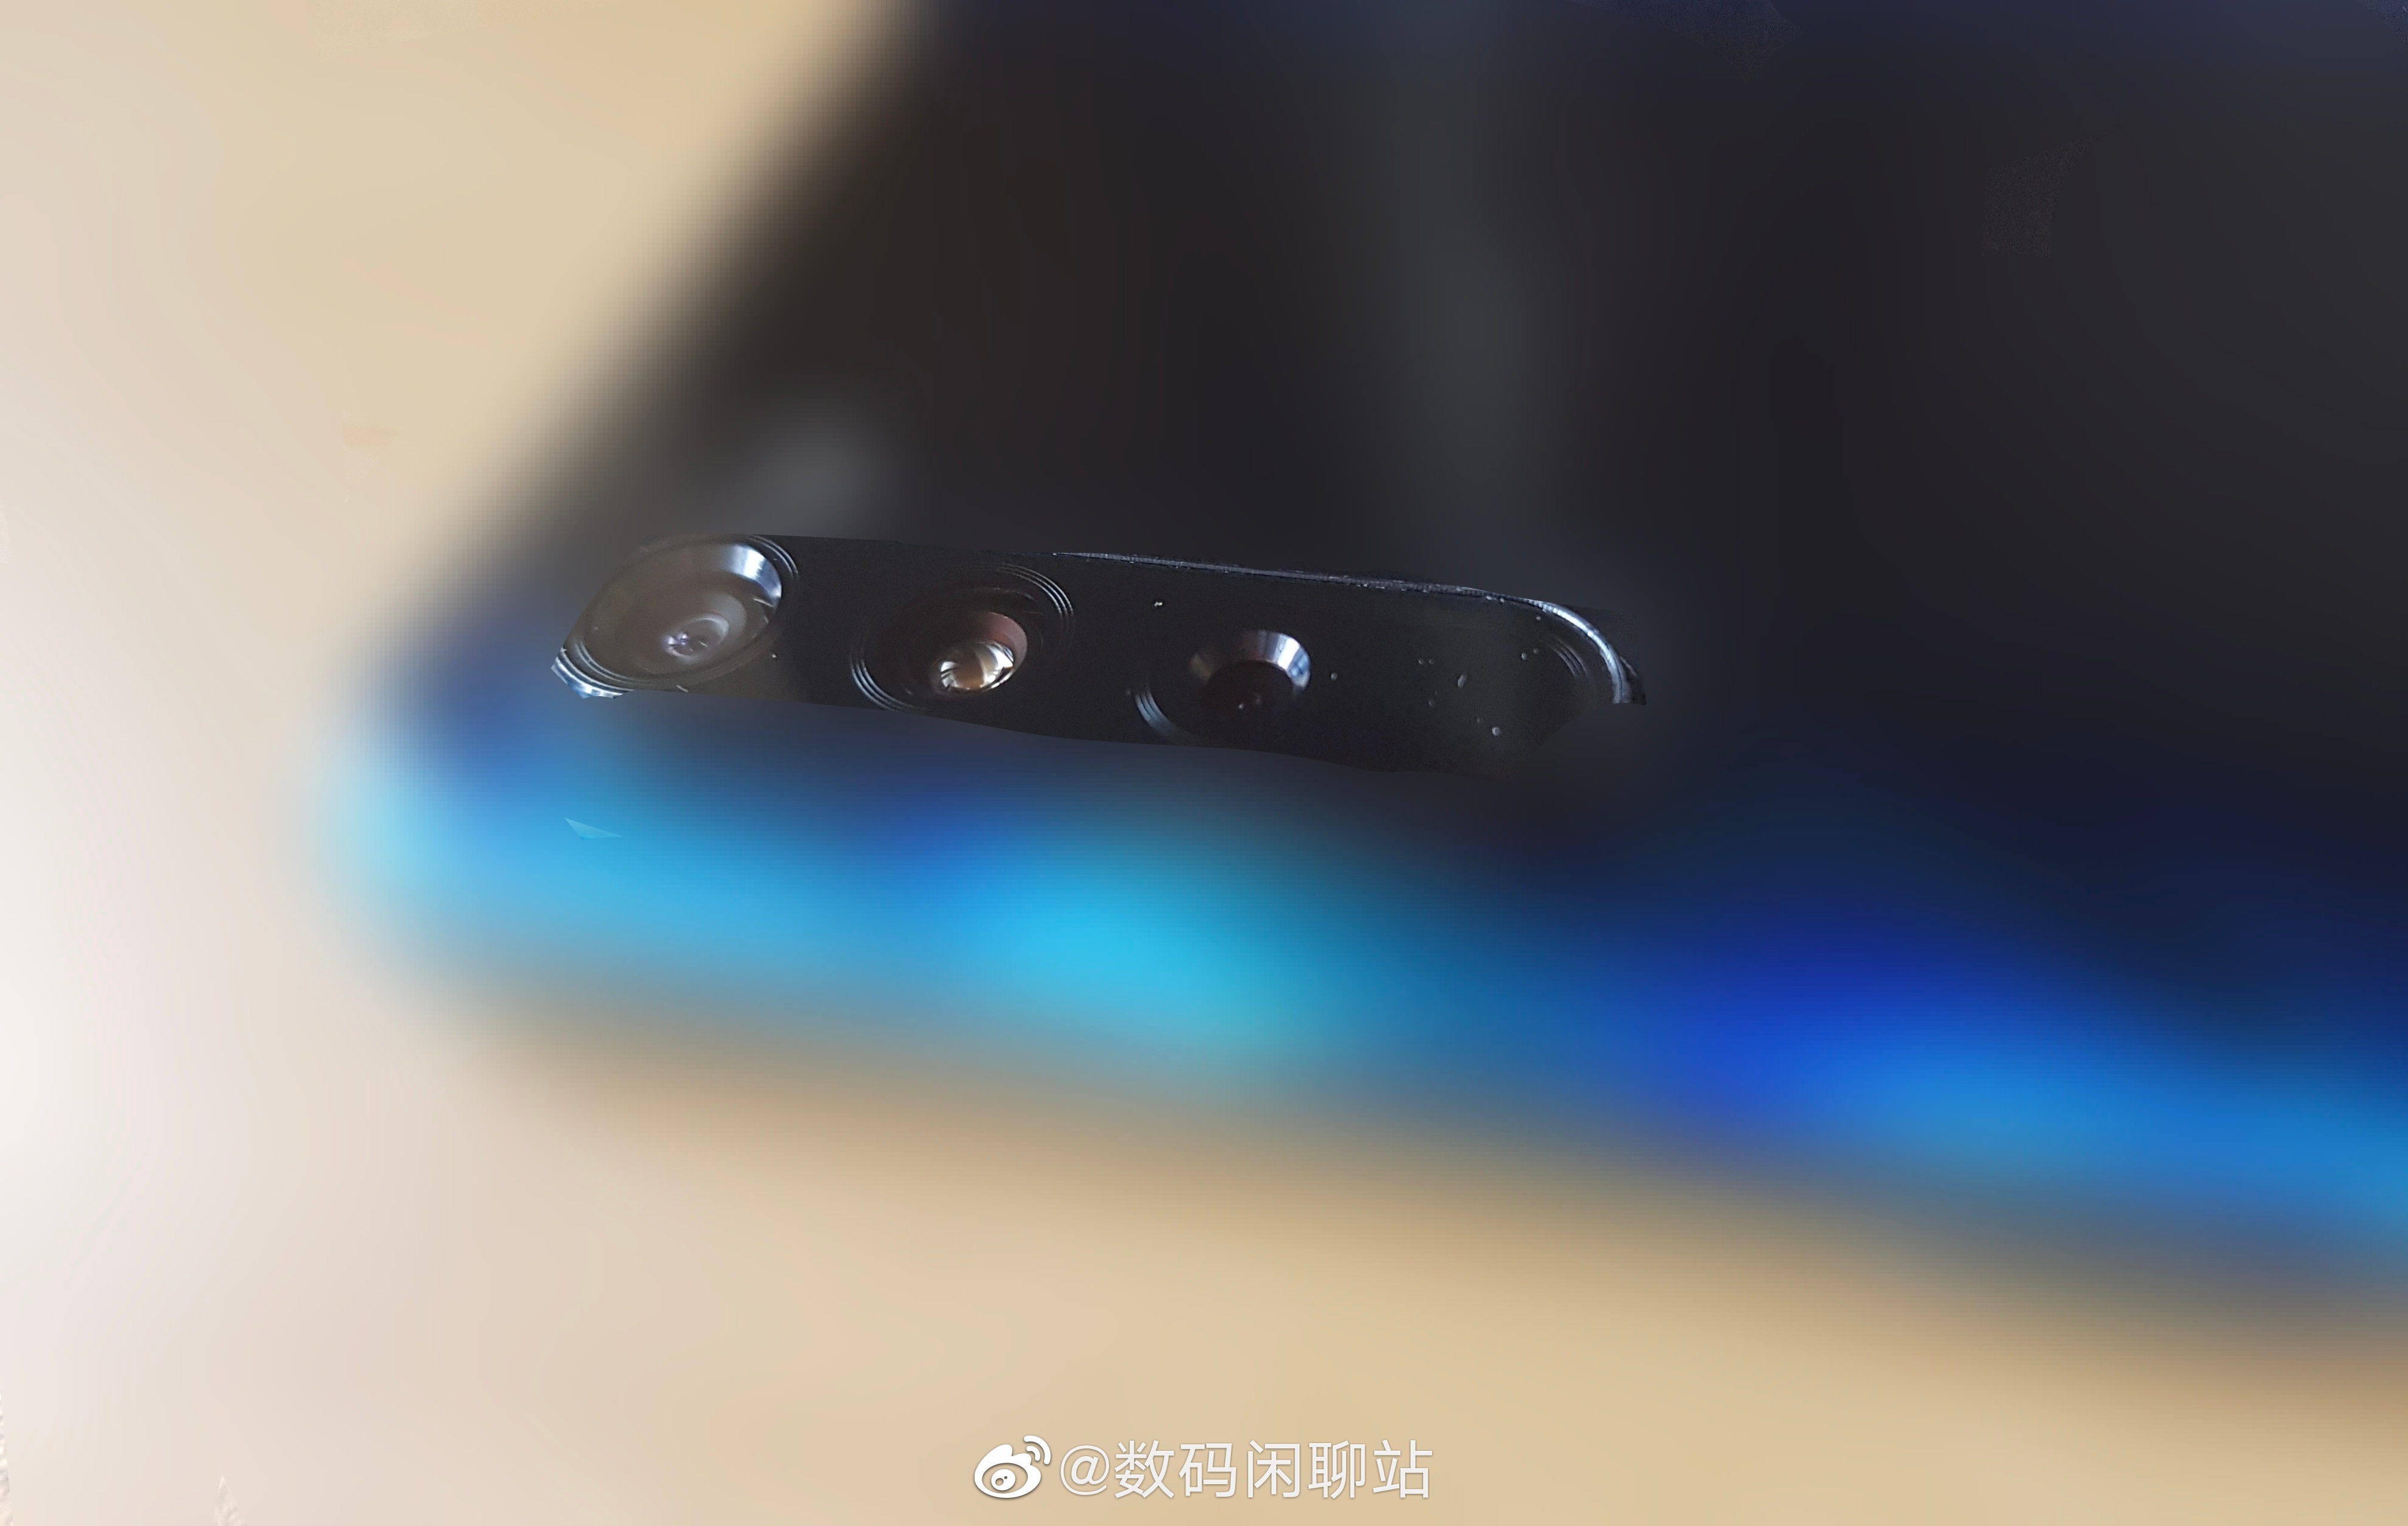 Xiaomi Mi 10 Pro AnTuTu smartfony 2020 kiedy premiera plotki przecieki wycieki specyfikacja dane techniczne Samsung Galaxy S11 Galaxy S20